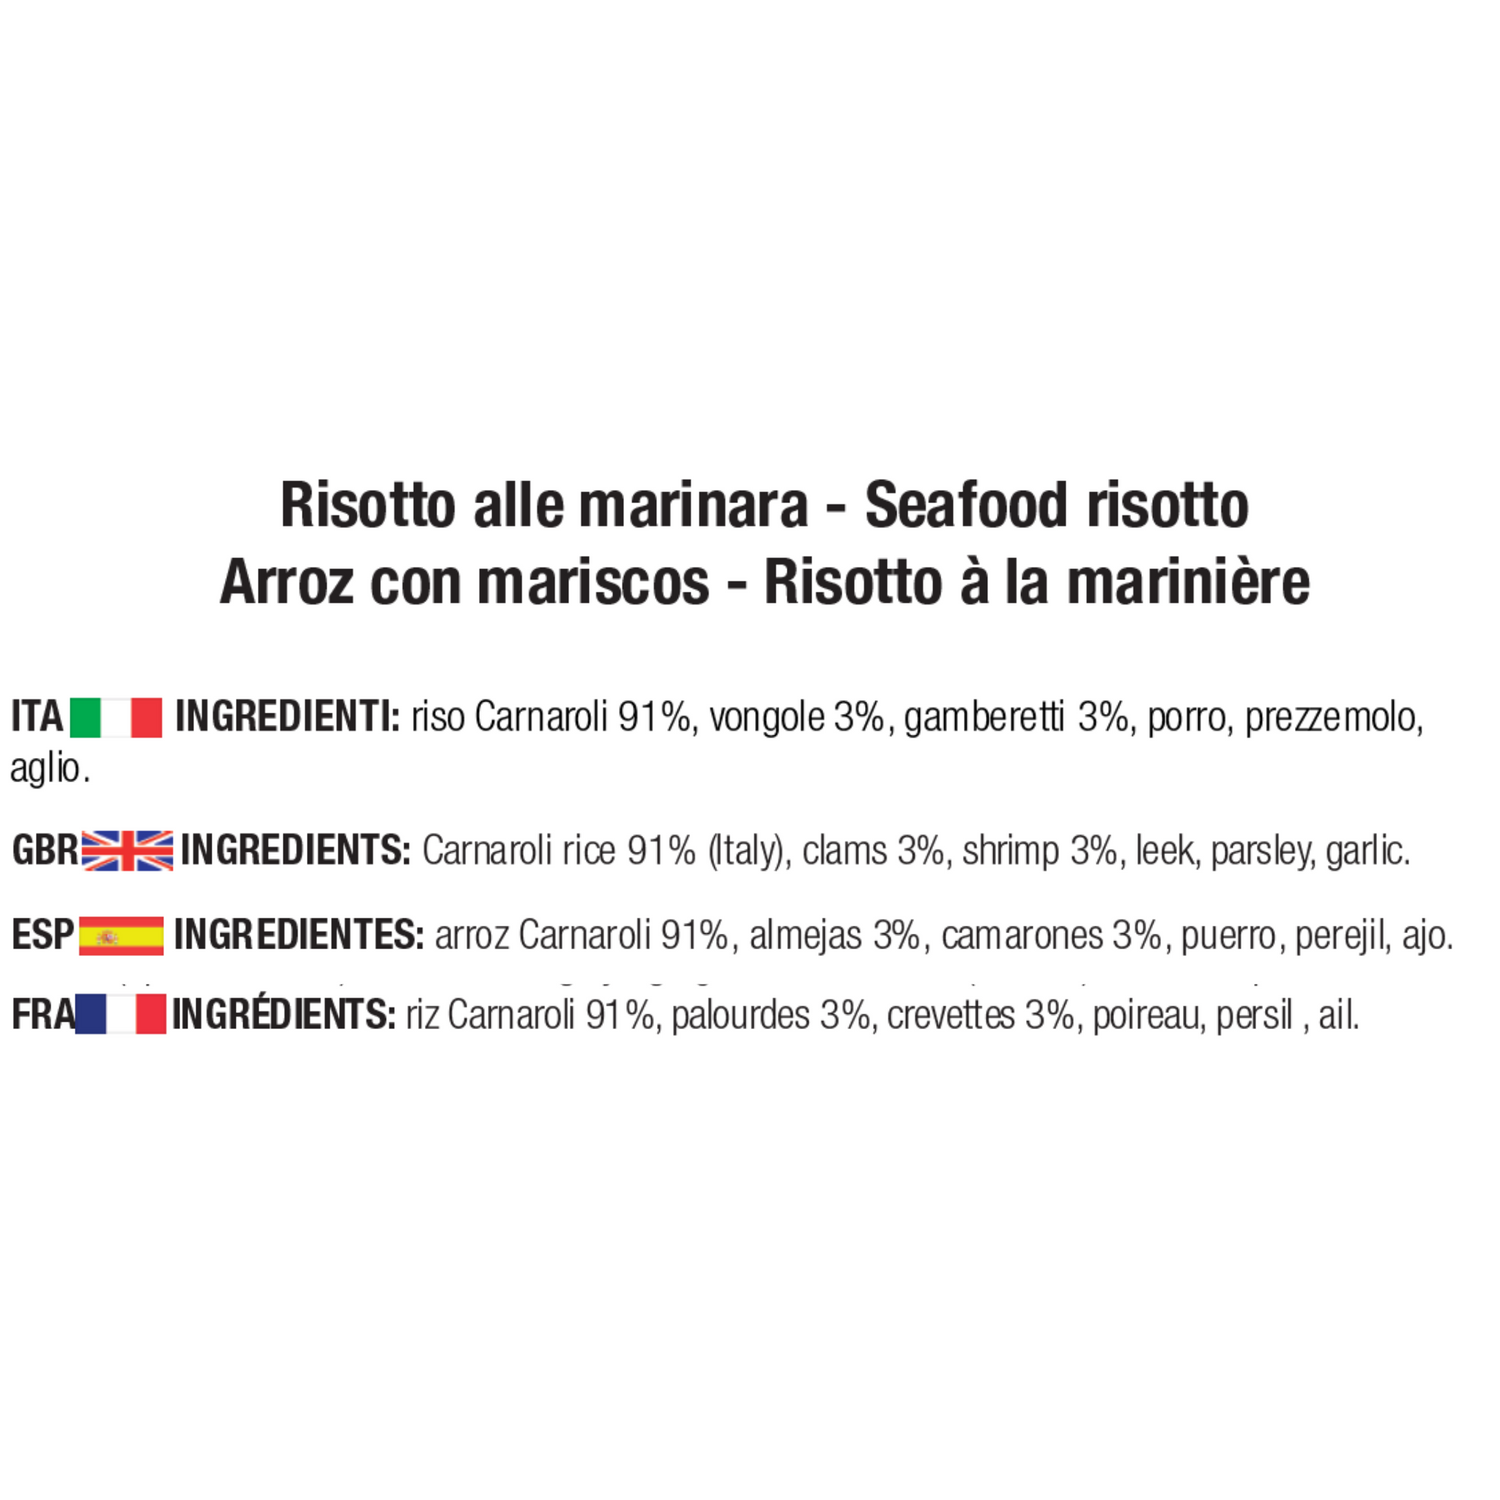 ingredienti risotto alla marinara: riso Carnaroli 91%, vongole 3%, gamberetti 3%, porro, prezzemolo, aglio.